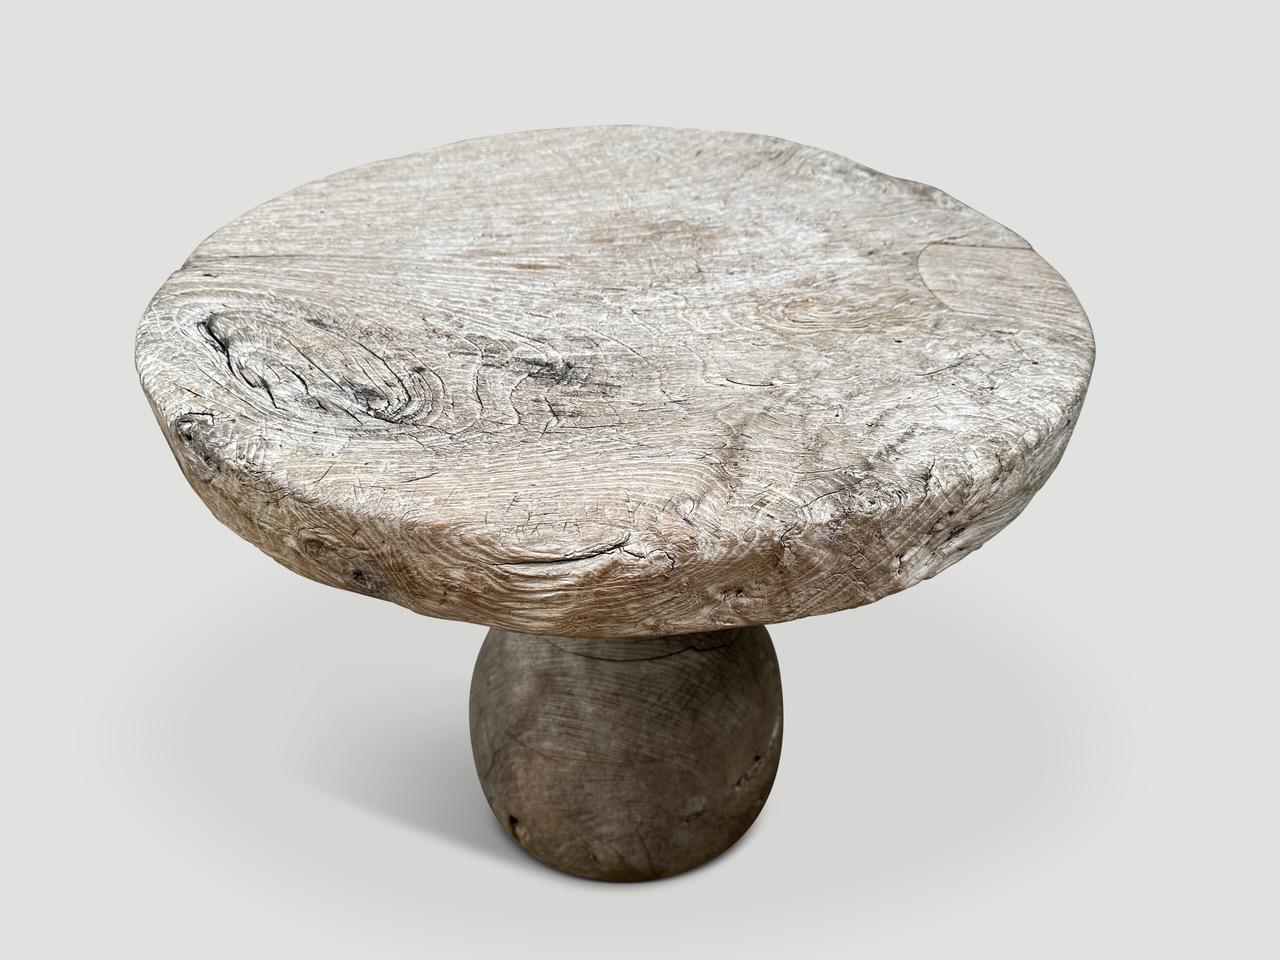 Ein einzigartiger Tisch, der ursprünglich zum Flechten komplizierter Körbe verwendet wurde. Die Platte ist beeindruckende drei Zentimeter dick und der skulpturale Sockel besteht aus massivem Teakholz. Die Oberfläche ist in einem durchscheinenden